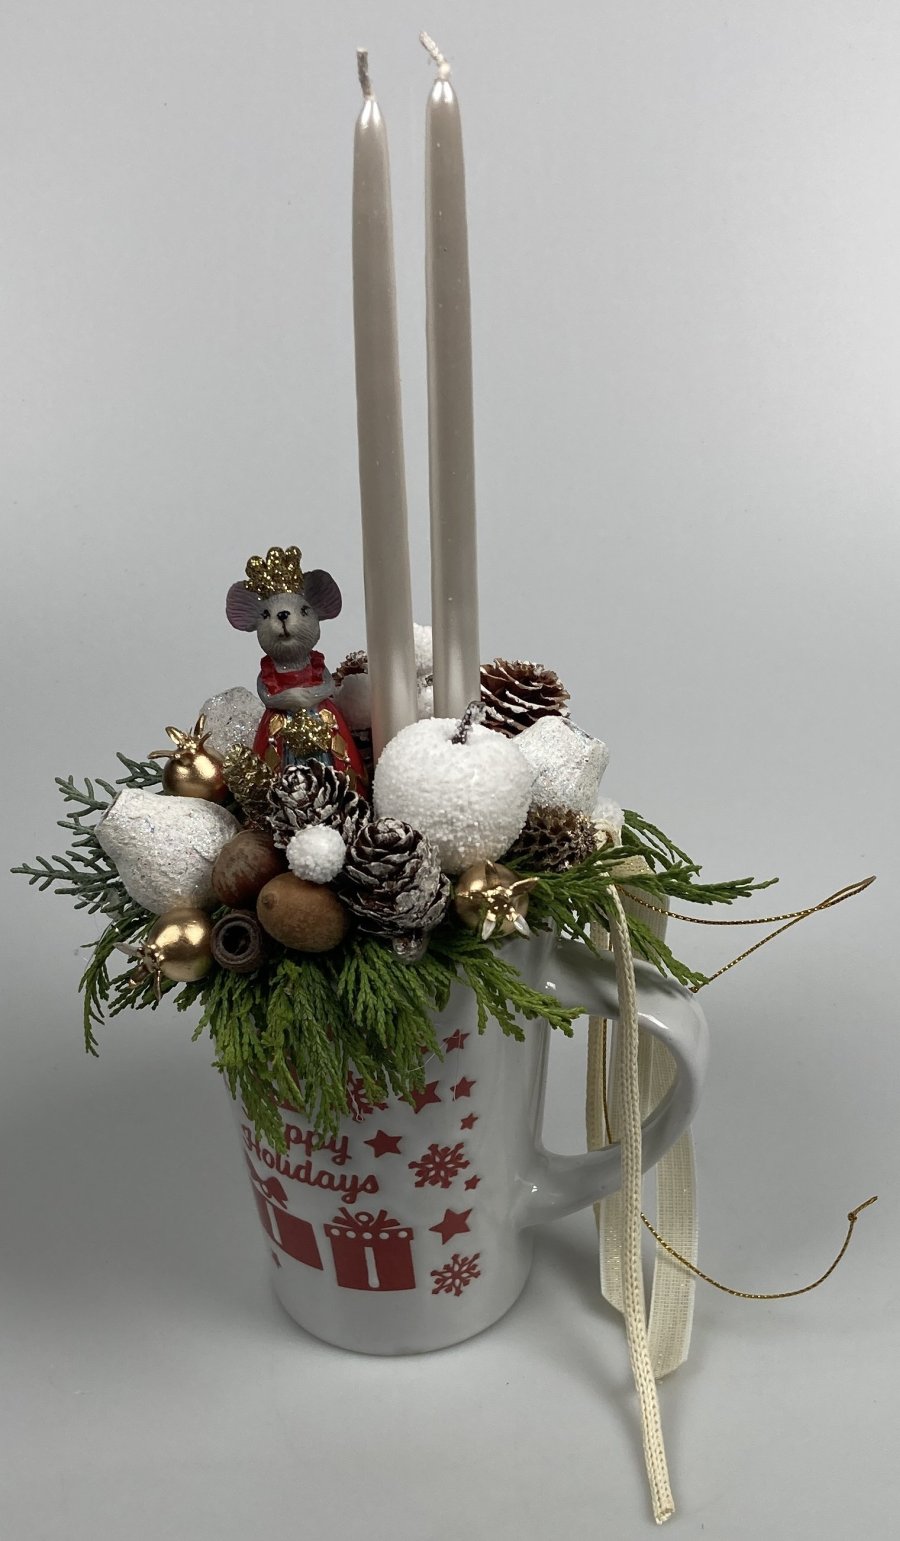 Egérkirálynővel töltött karácsonyi kerámiabögre tujaágyon, szalagokkal